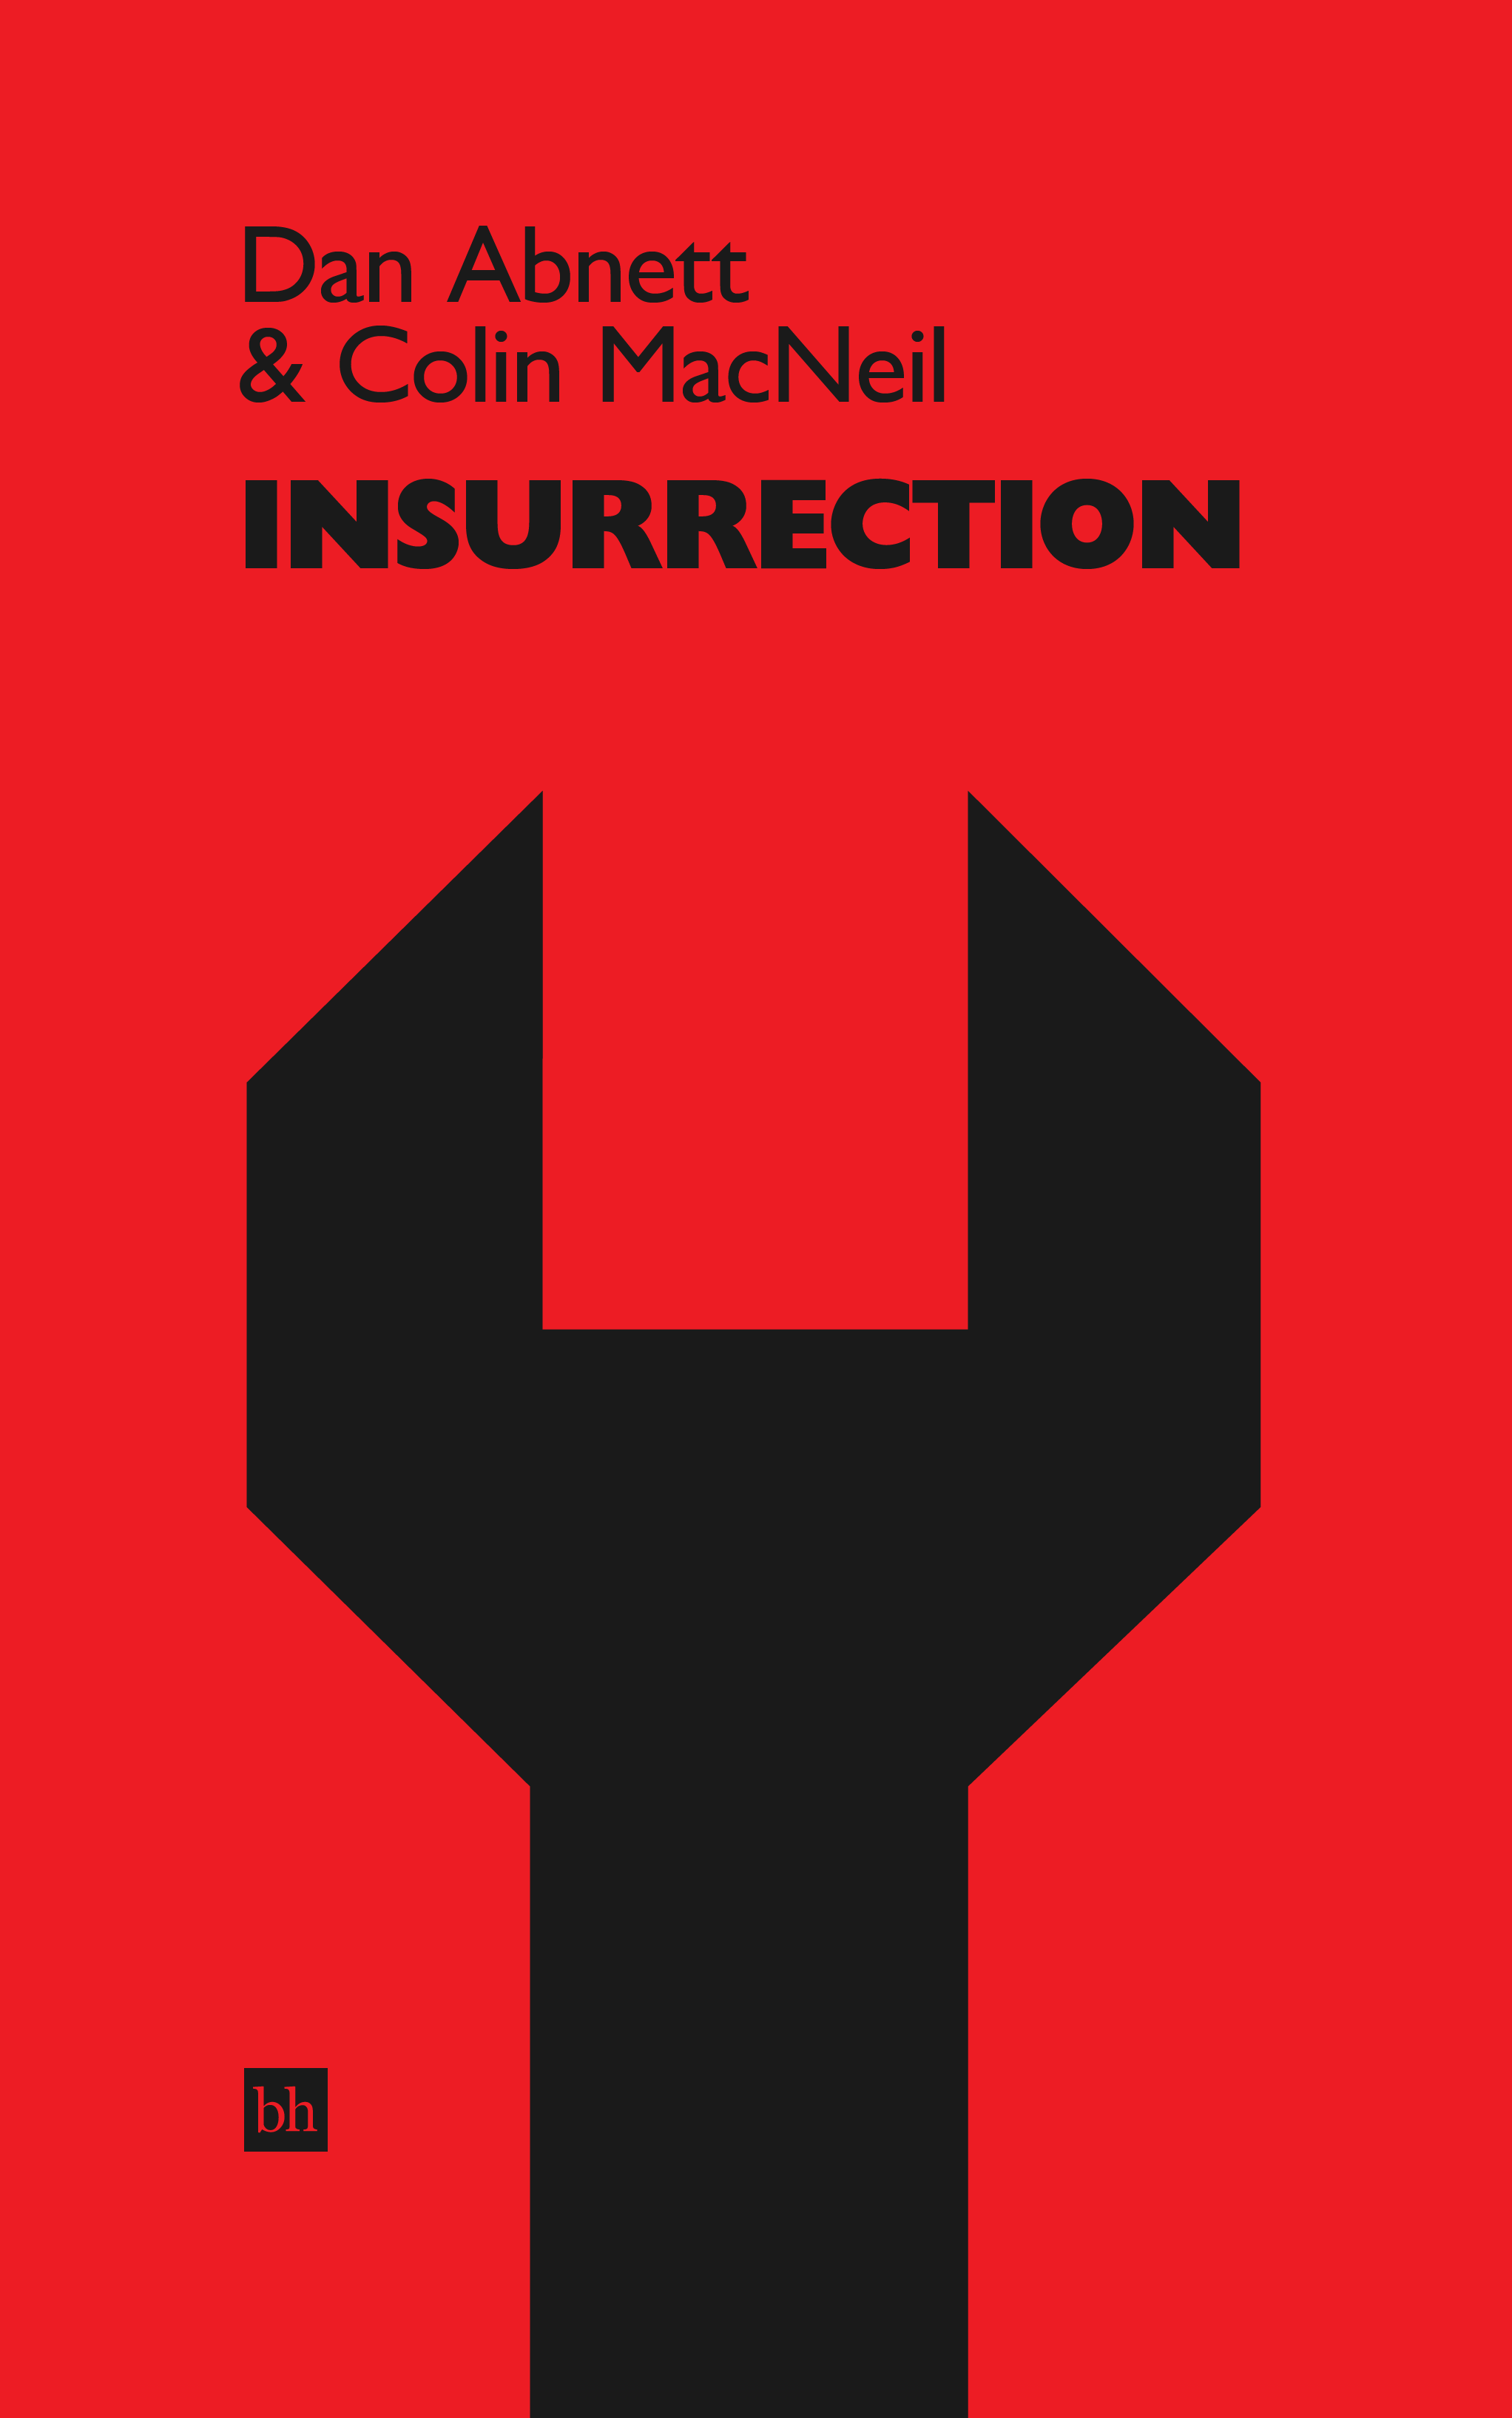 Insurrection by Dan Abnett